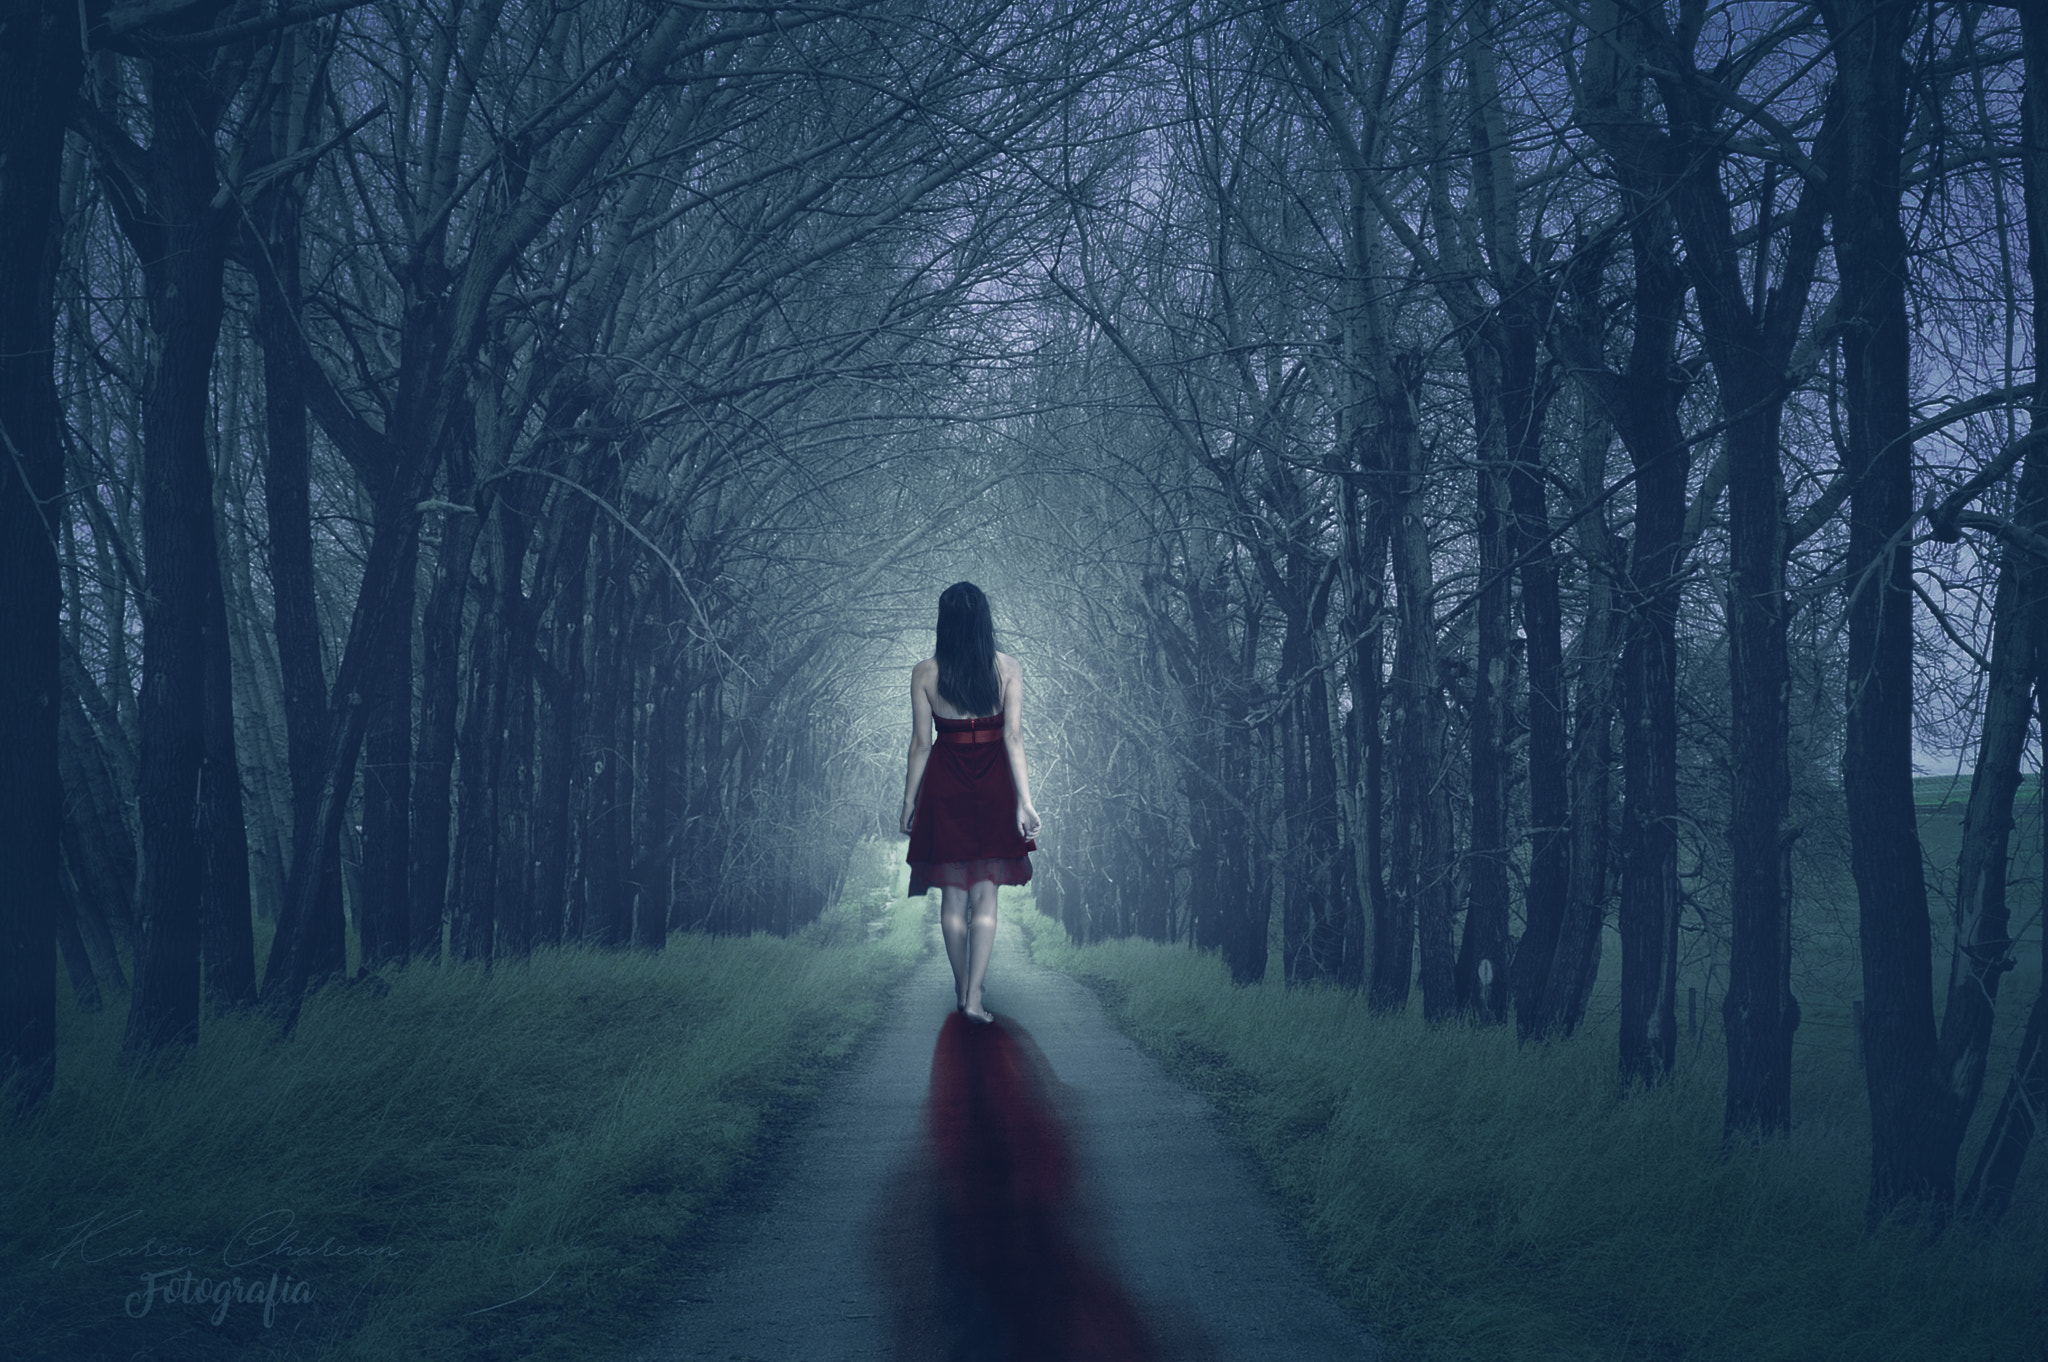 Alice in the land of nightmares - Open door